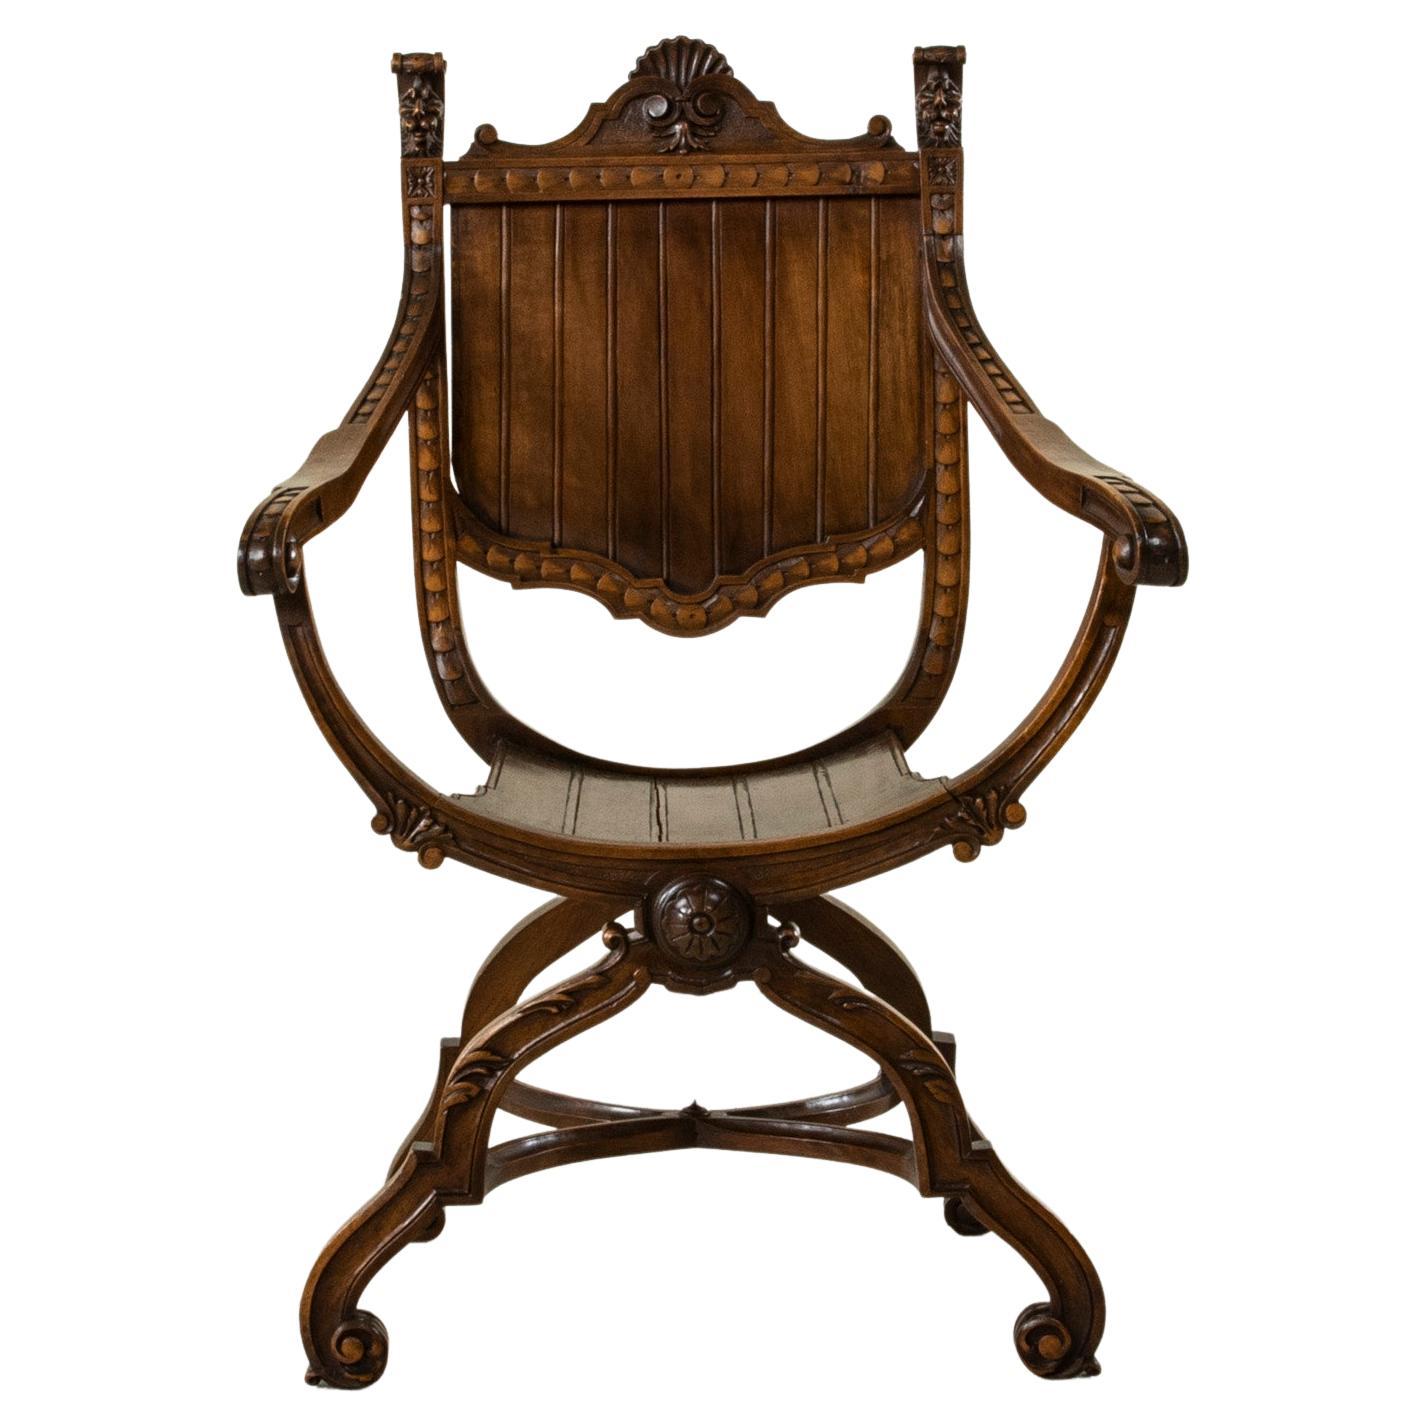 Dagobert-Stuhl aus handgeschnitztem Walnussholz im französischen Renaissance-Stil des späten 19. Jahrhunderts